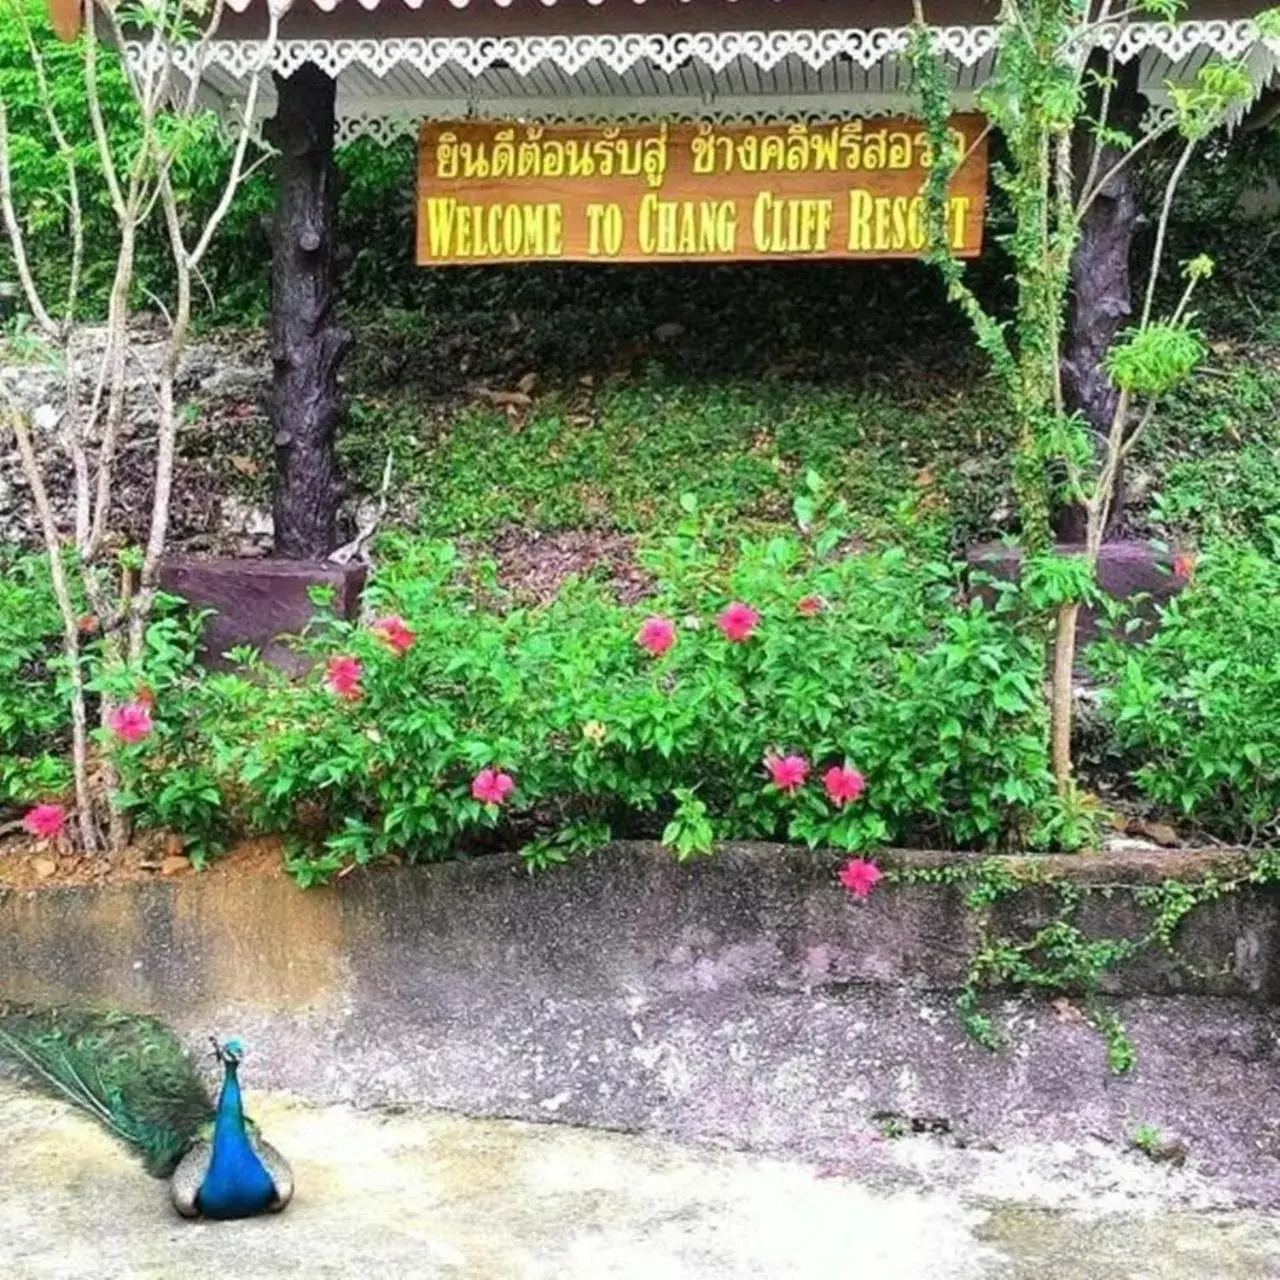 Garden view in Chang Cliff Resort